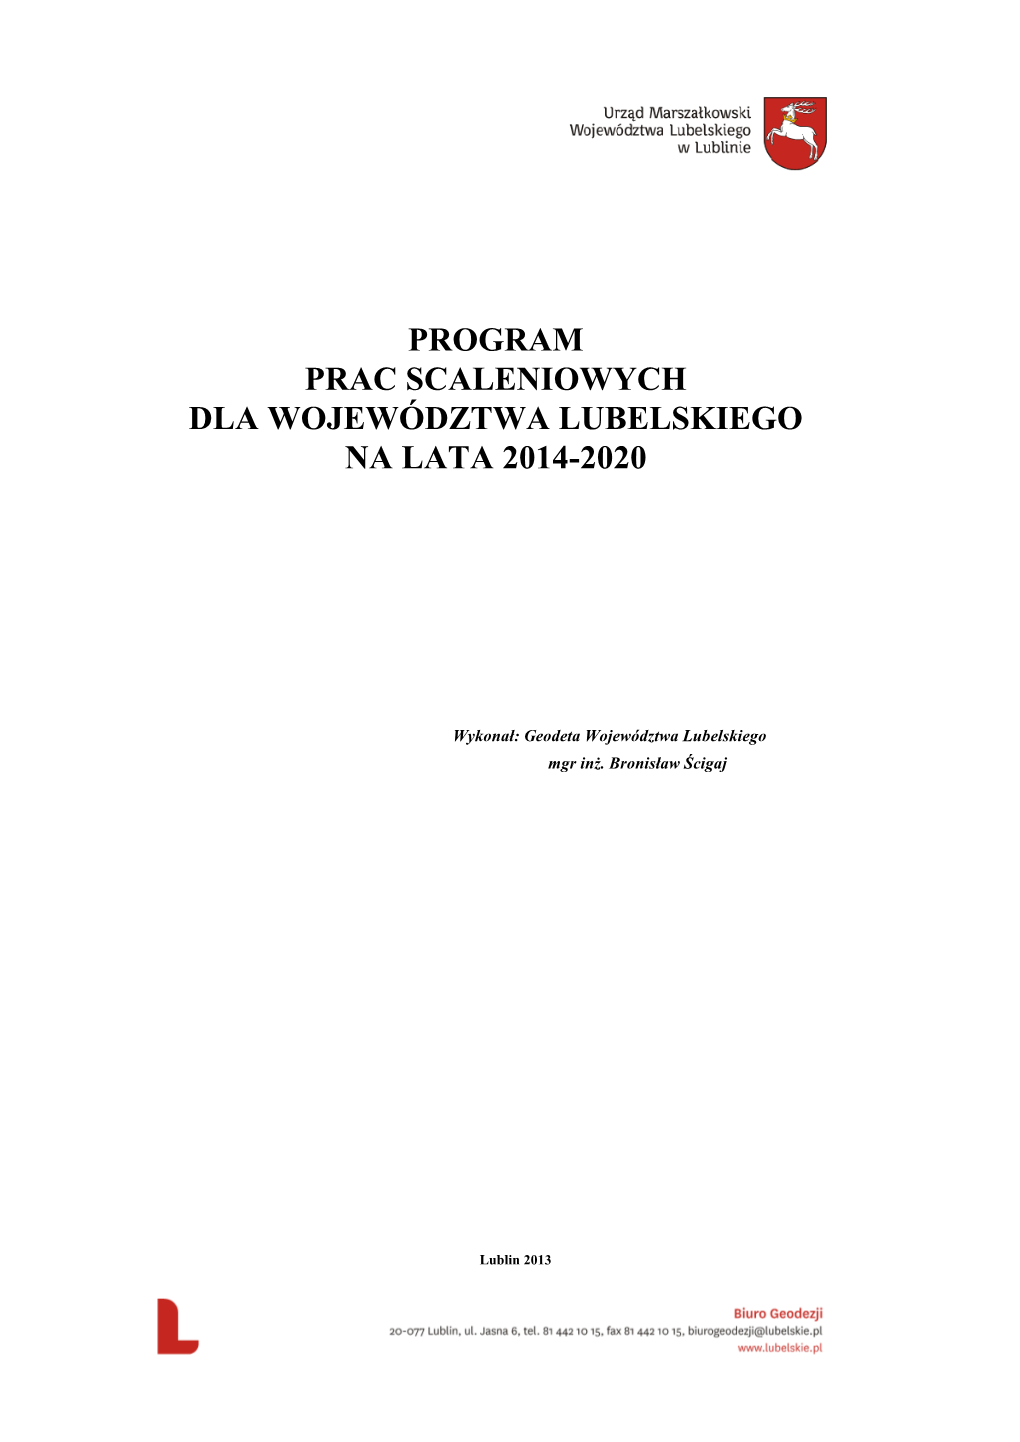 Program Prac Scaleniowych Dla Województwa Lubelskiego Na Lata 2014-2020